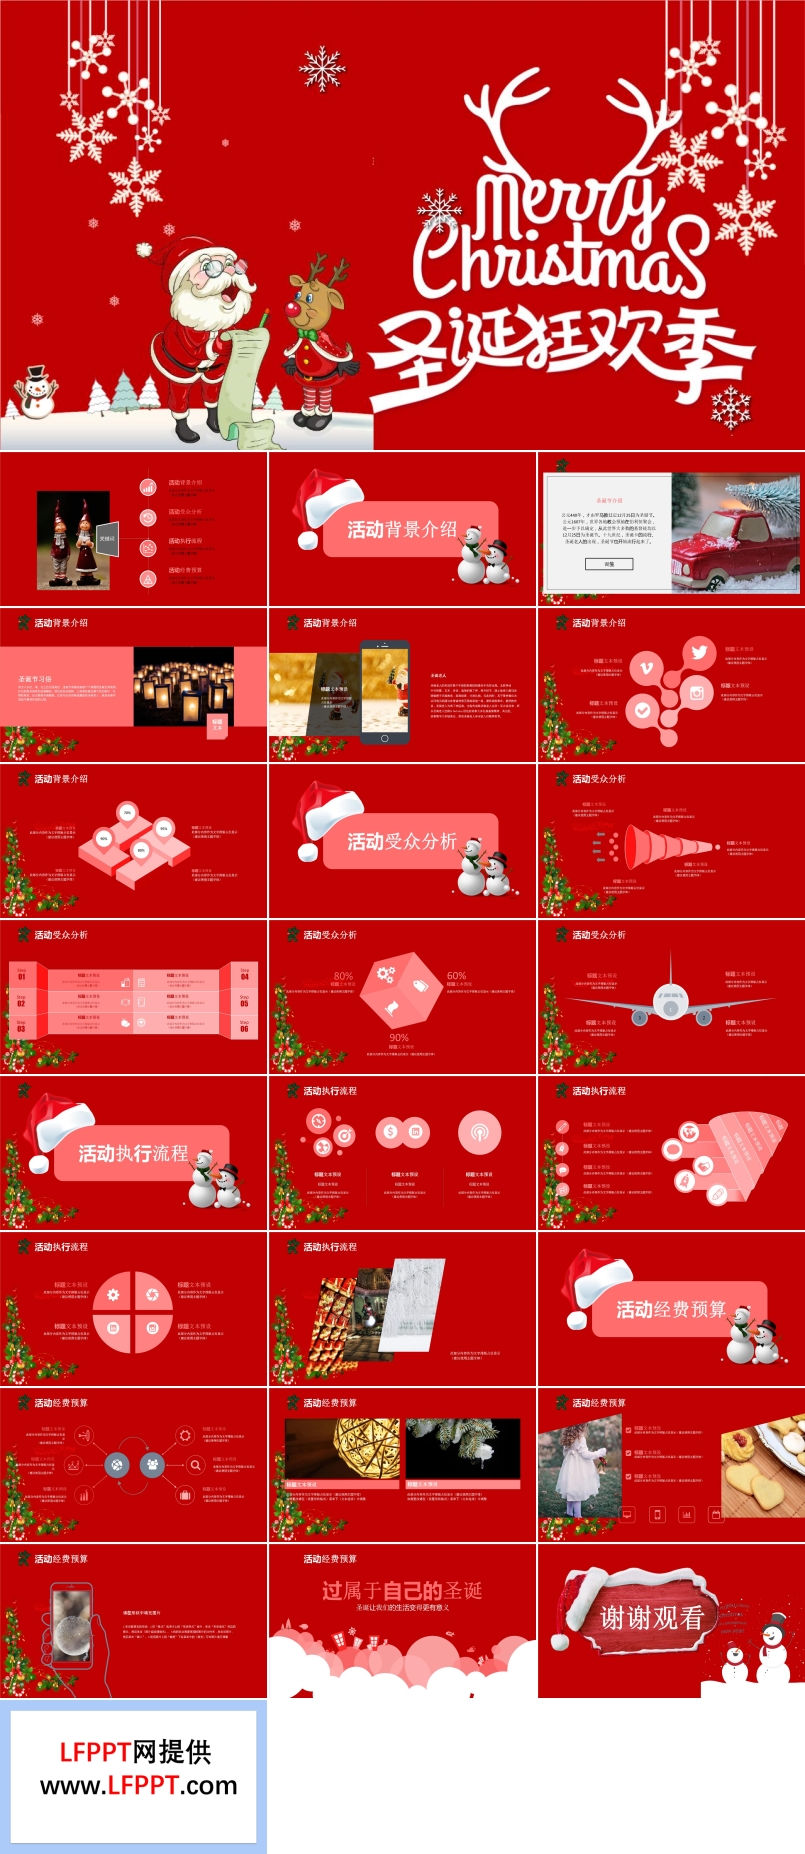 圣诞狂欢节活动策划规划计划PPT模板